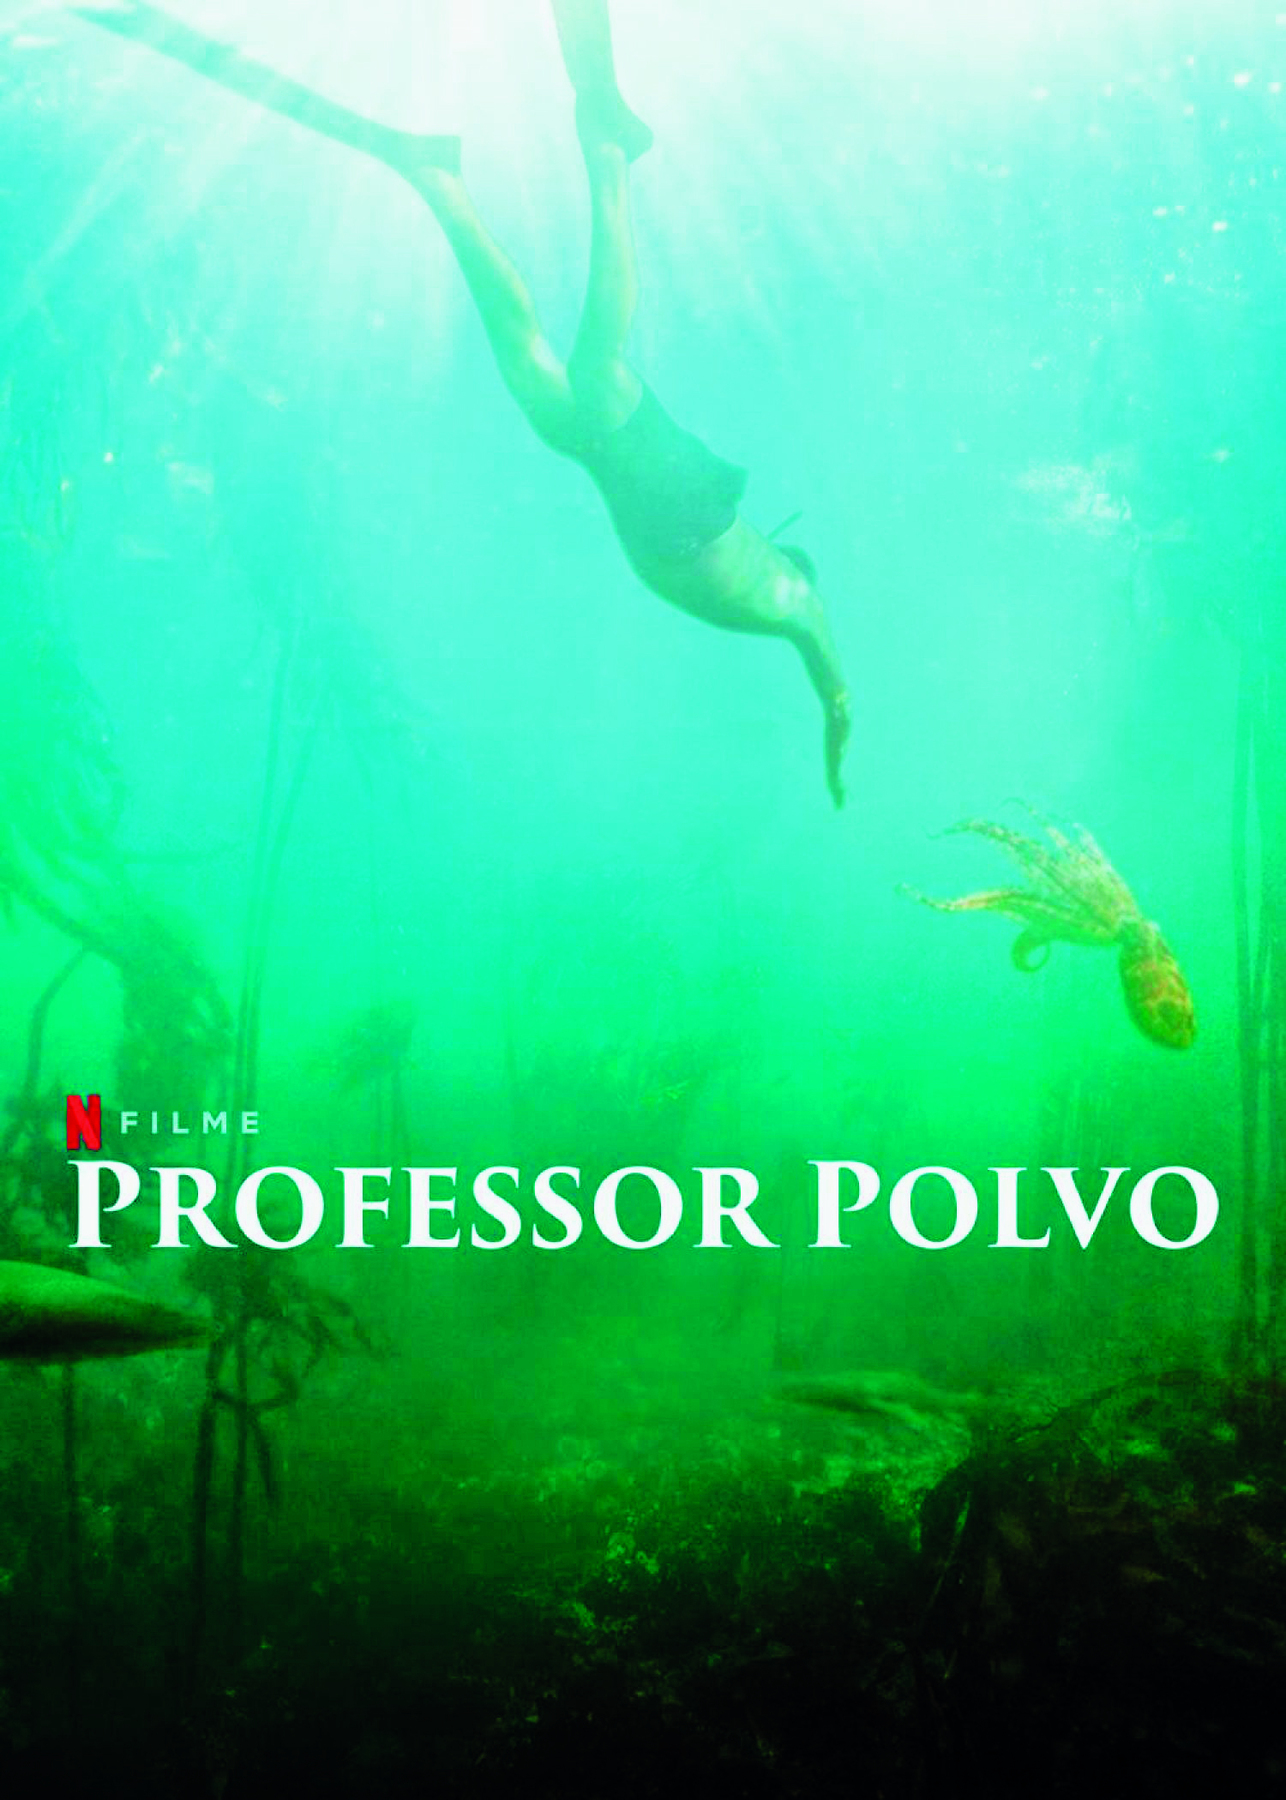 Cartaz. Fotografia de uma pessoa mergulhando com um polvo. Sobreposto a foto o título PROFESSOR POLVO. FILME e o ícone da Netflix .